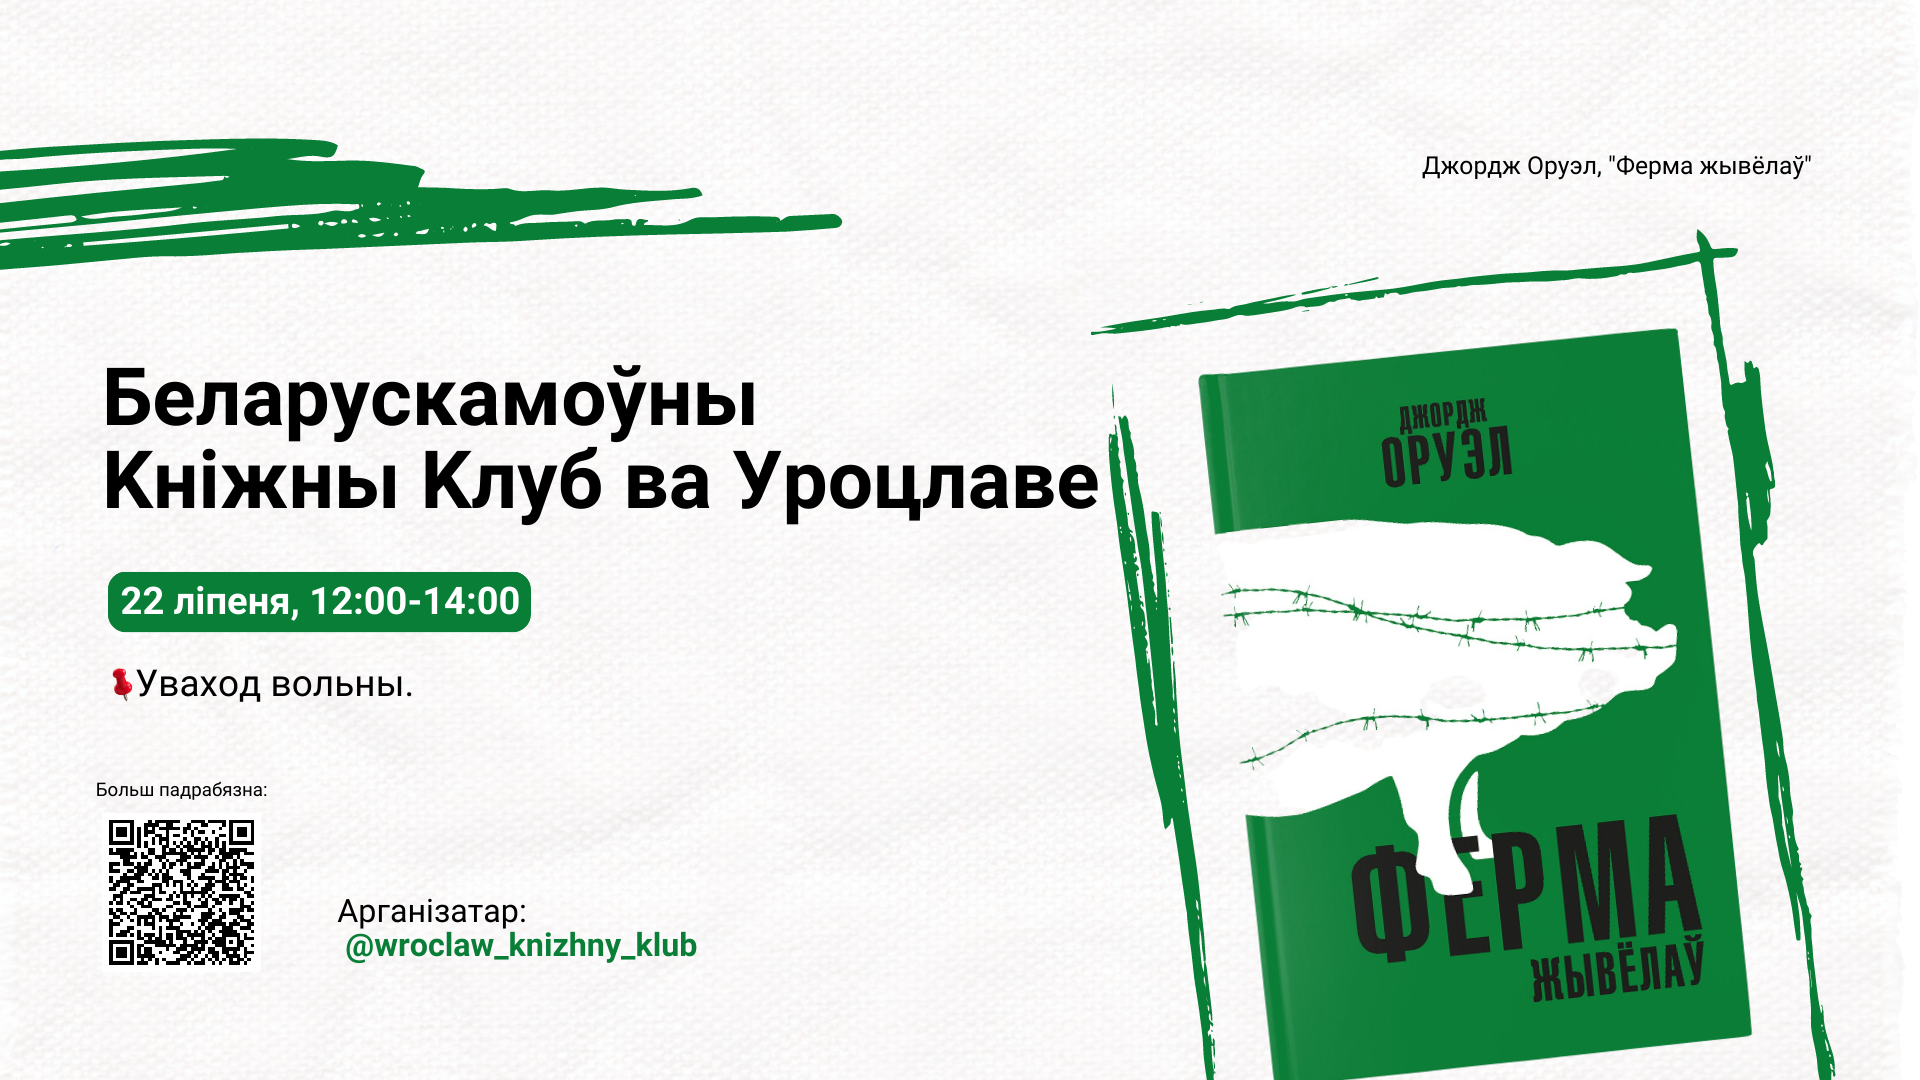 Spotkanie Białoruskiego Klubu Książkowego 22 lipca w Przejście Dialogu. Wstęp wolny. Plakat przedstawia tytuł wydarzenia oraz grafikę książki George Orwell'a "Folwark zwierzęcy".